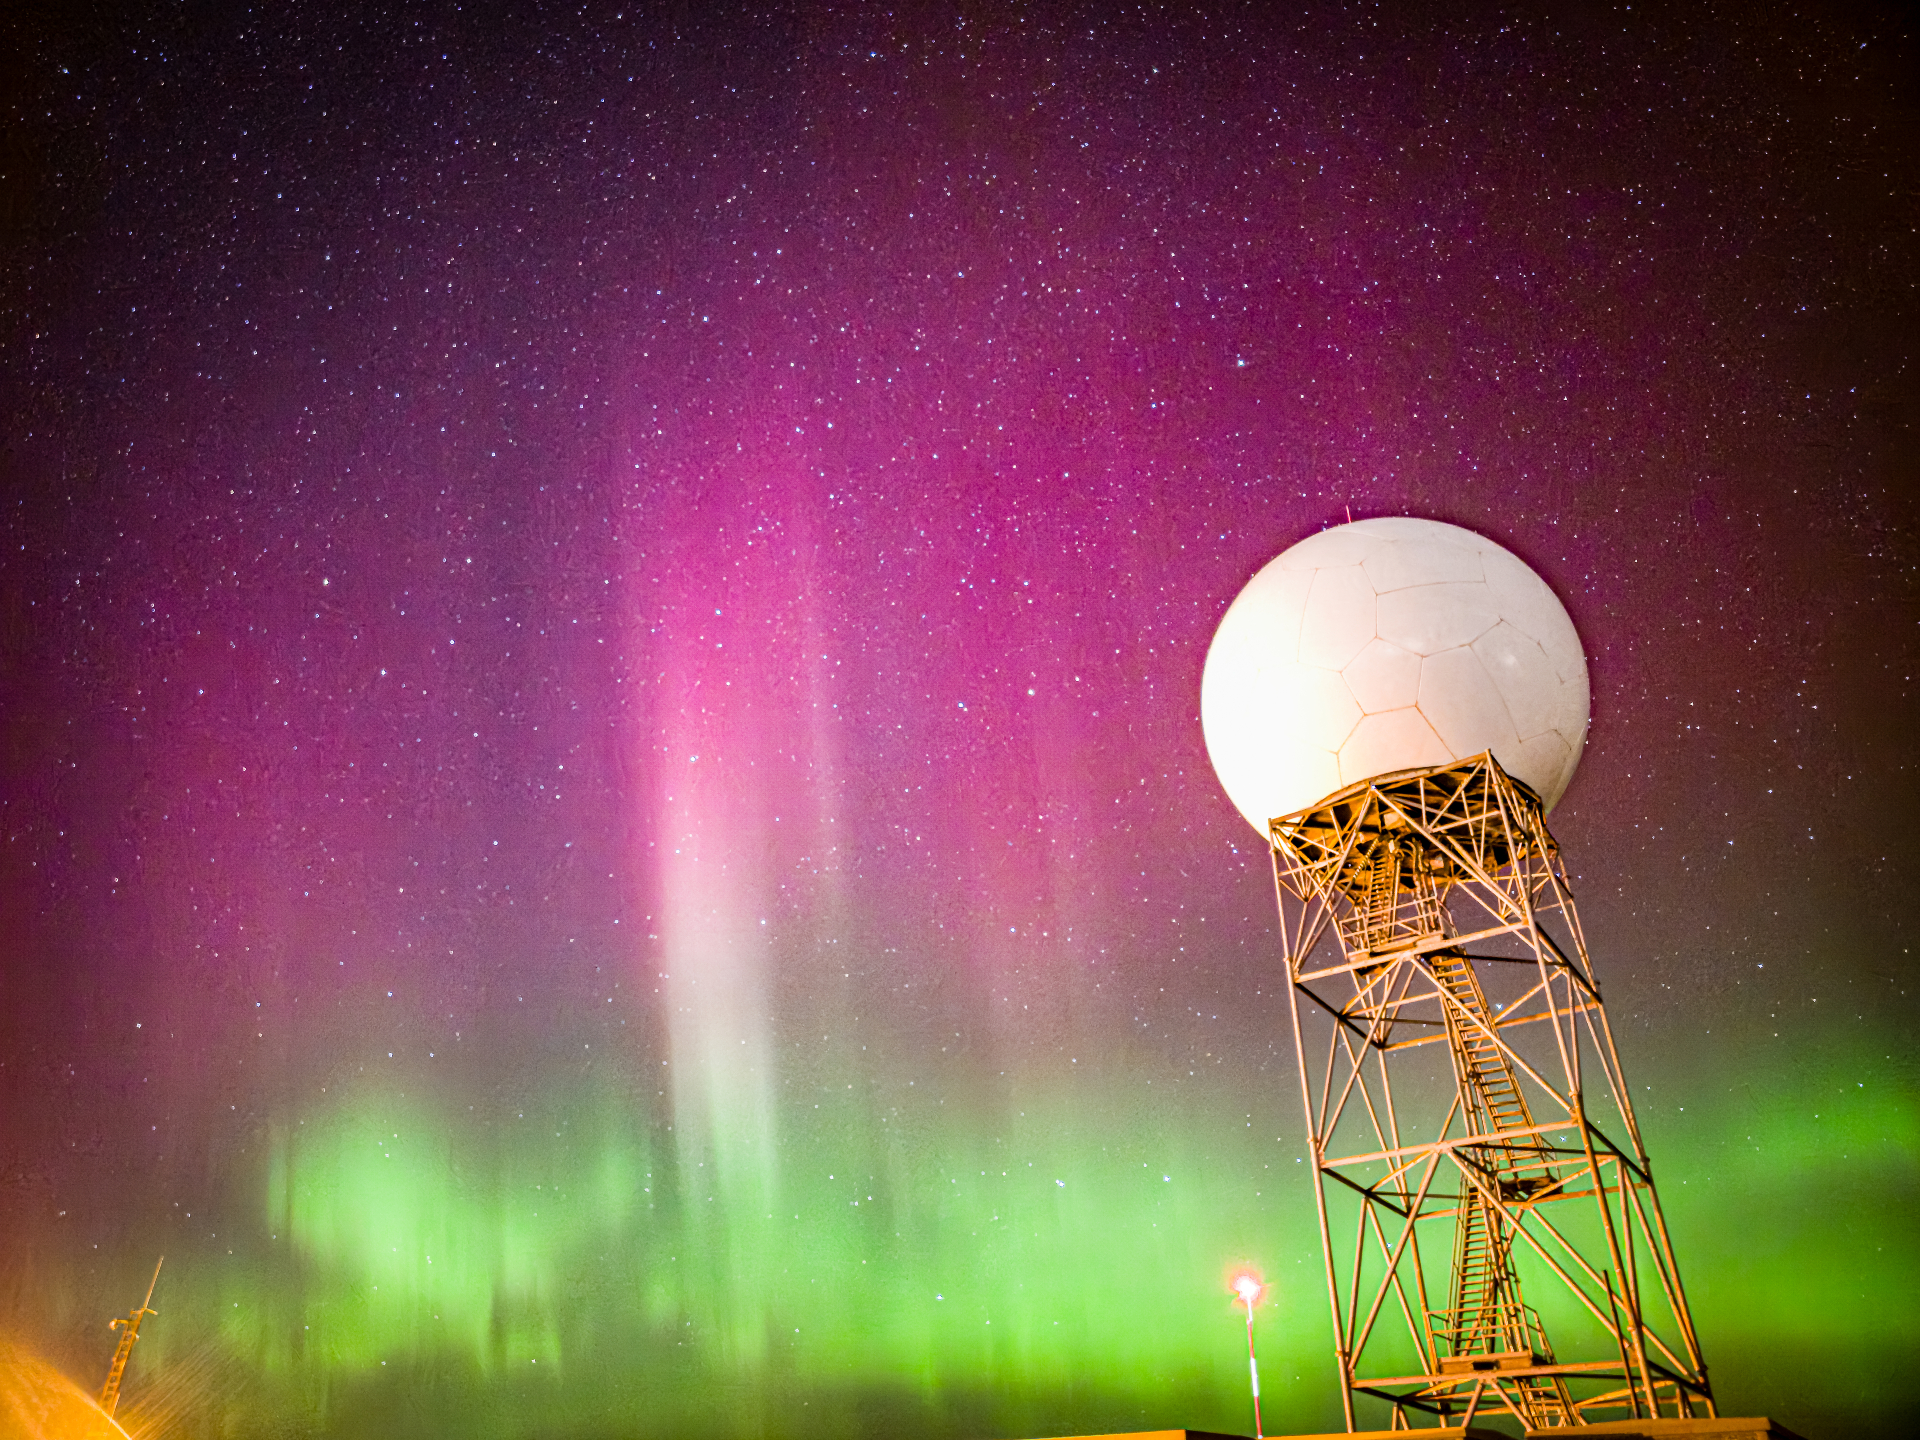 يتراقص الشفق القطبي الوردي والأرجواني النابض بالحياة فوق الشفق الأخضر.